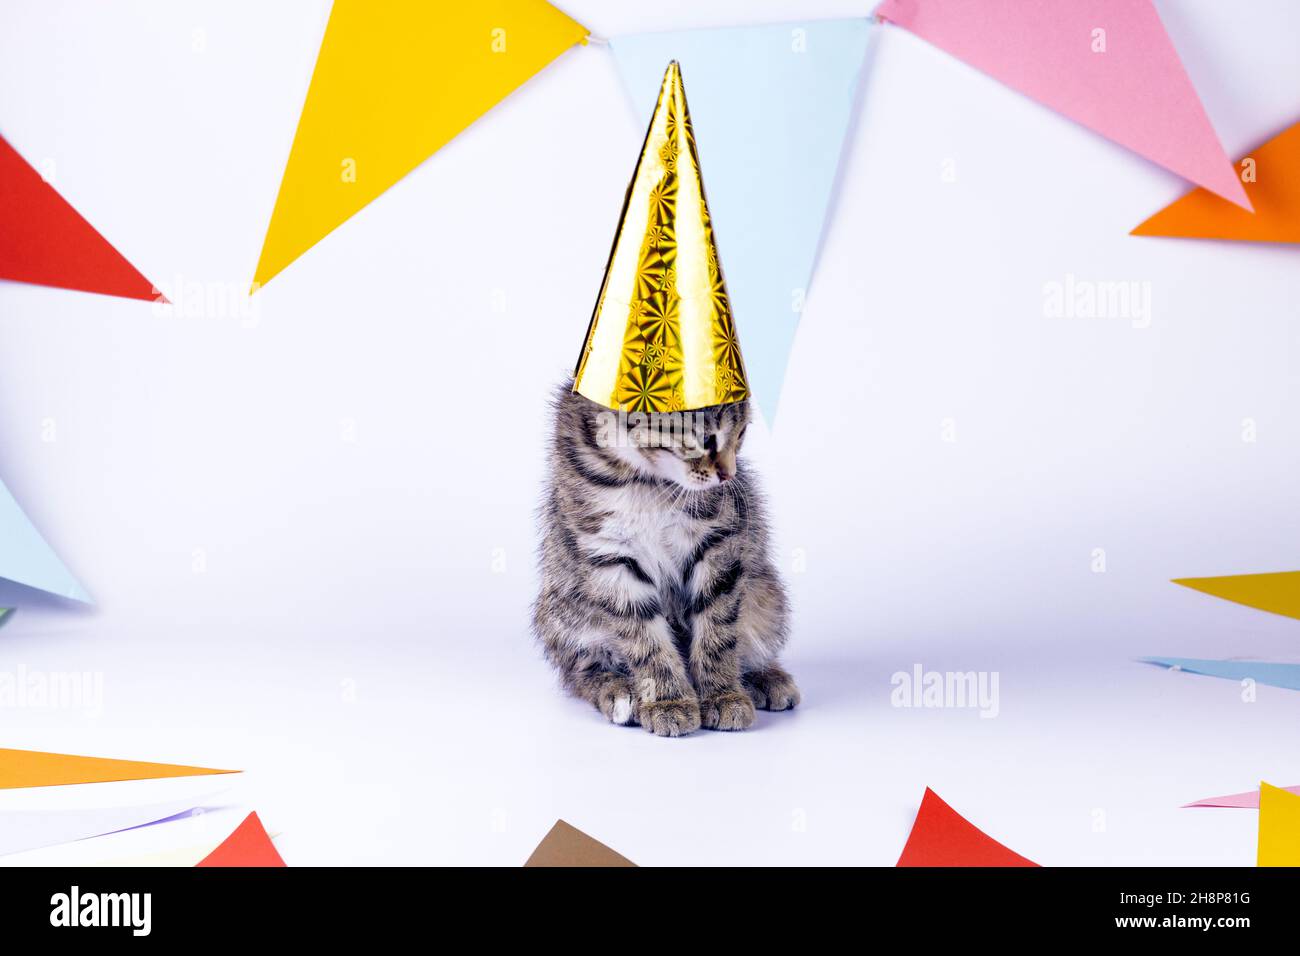 Piccolo gattino carino con cappello da festa e bandiere da festa su sfondo bianco. Immagine compleanno e festa. Foto Stock